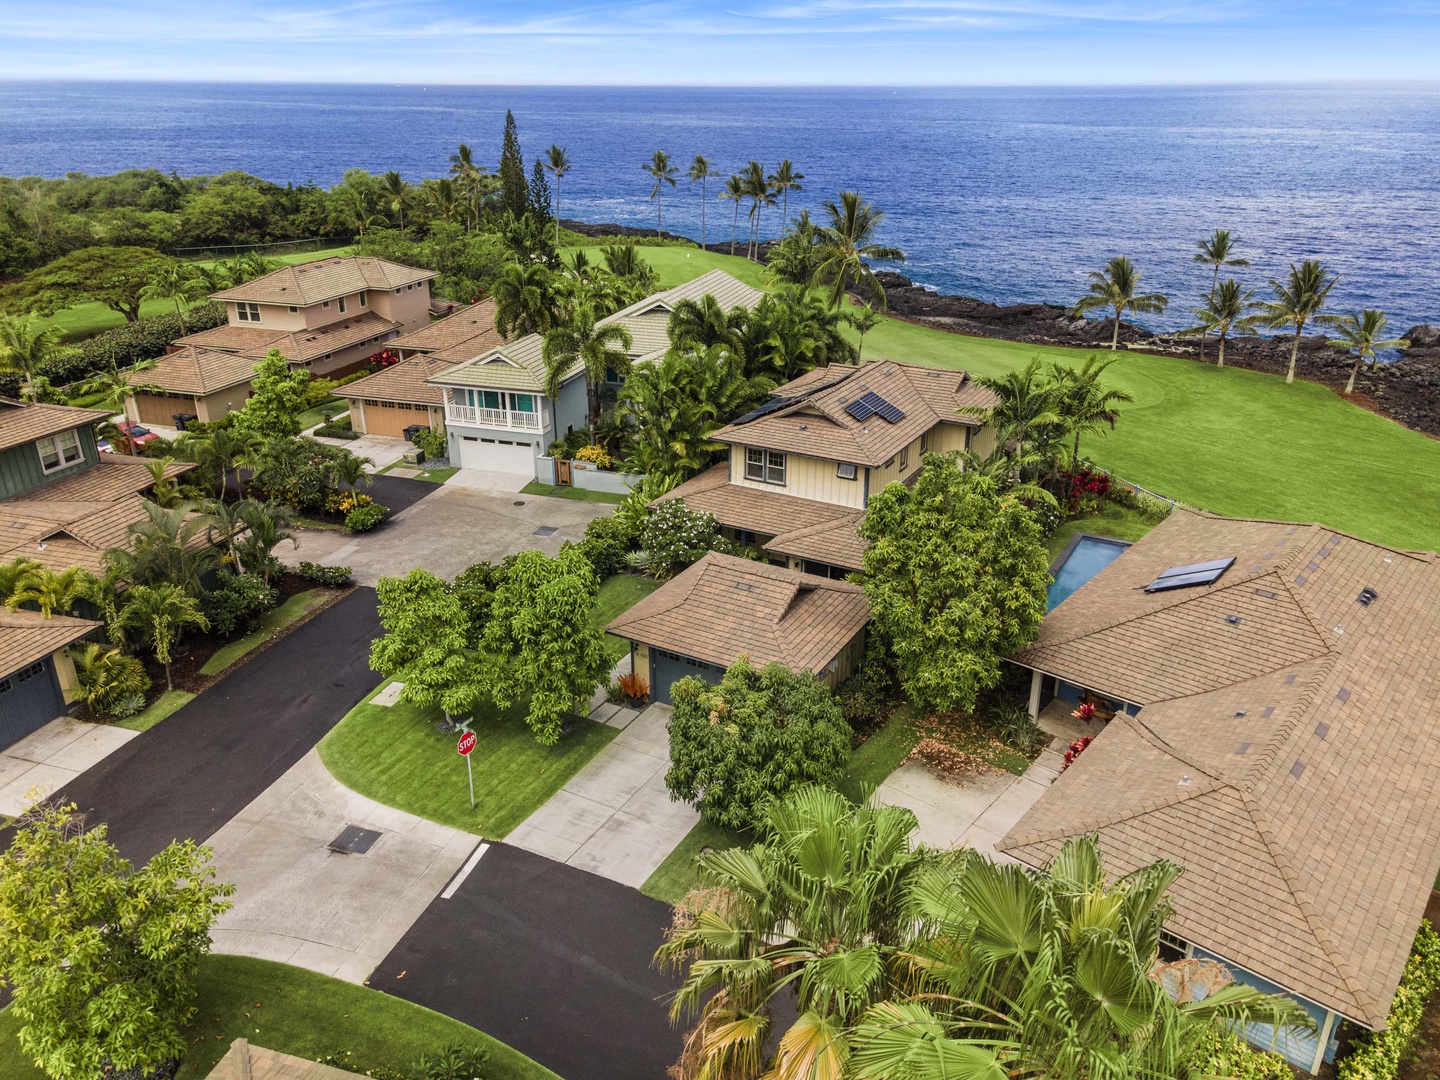 Kailua Kona Vacation Rentals, Holua Kai #20 - Aerials of the home and surrounding neighborhood